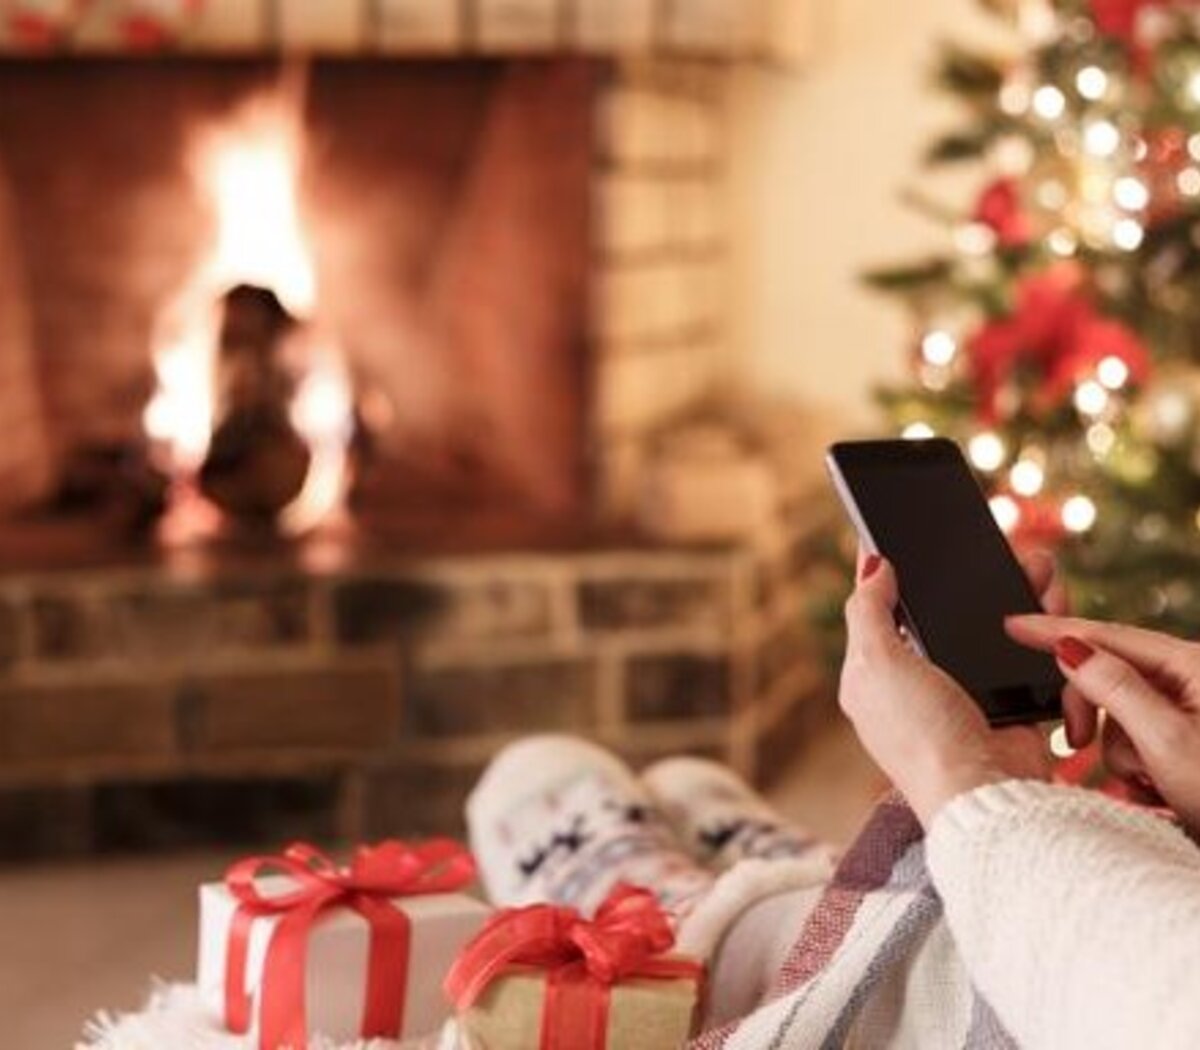 15 frases para enviar por WhatsApp en Navidad | Noche de paz, noche de amor  | Página12